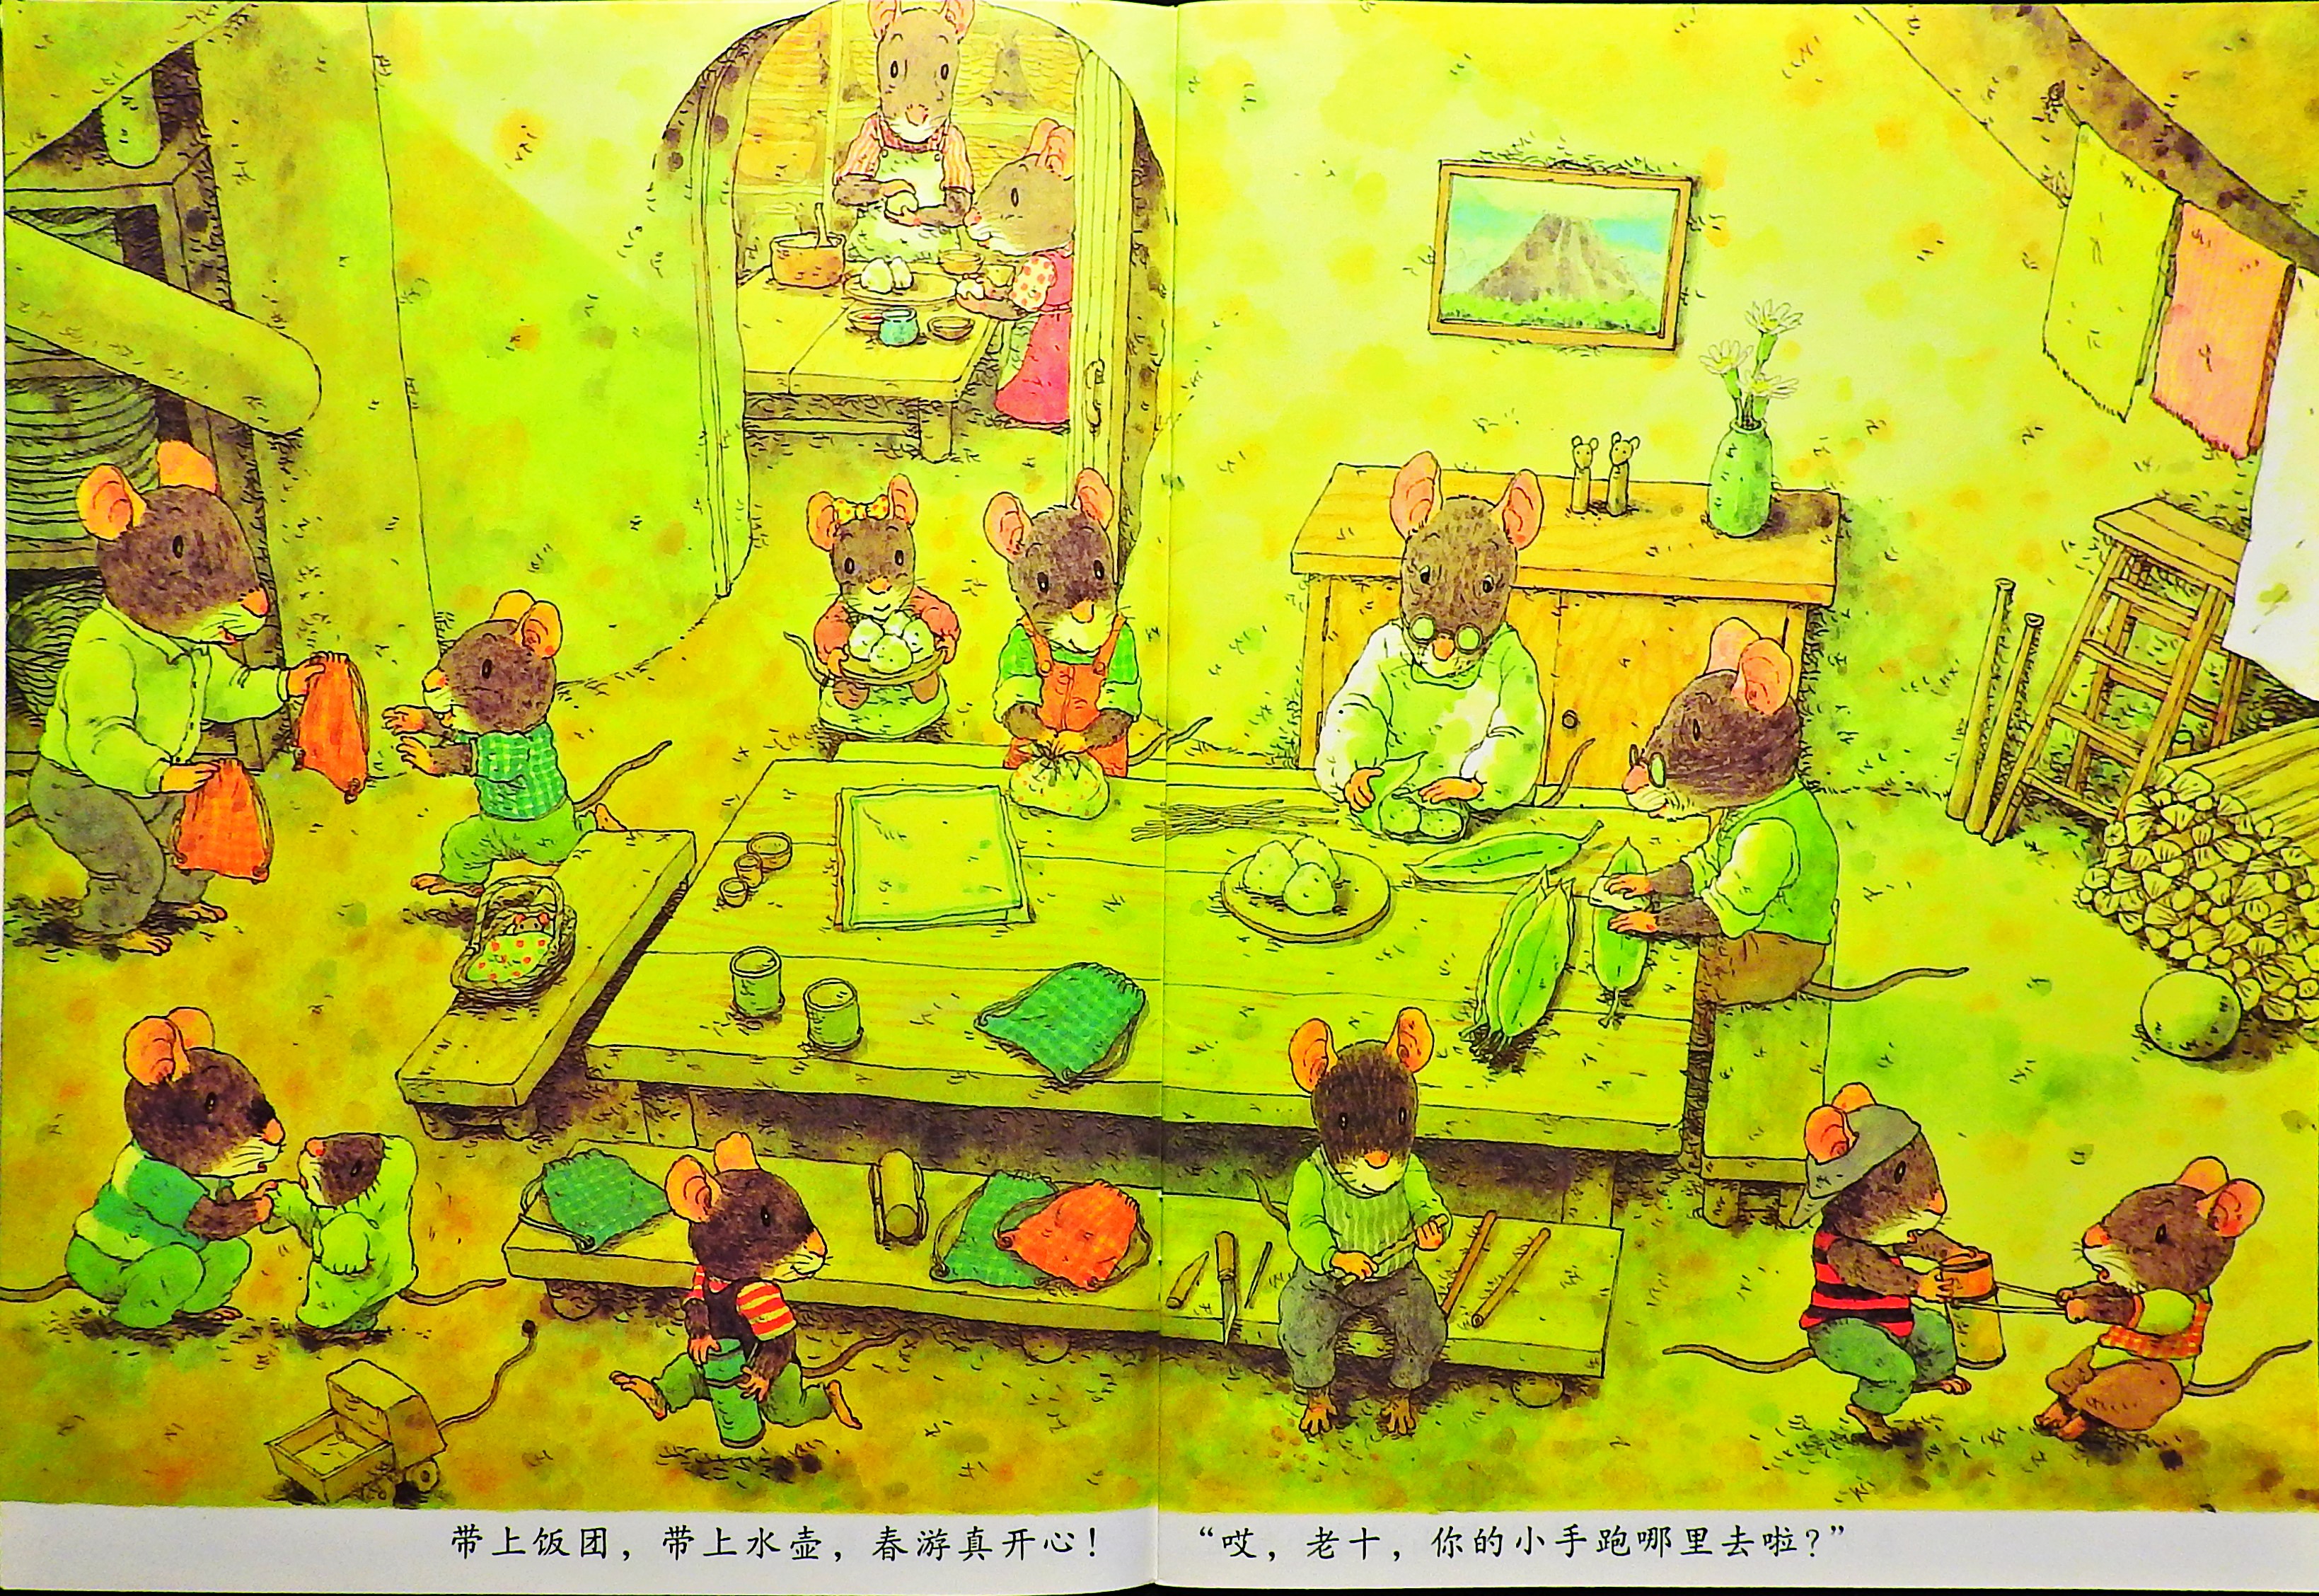 14只老鼠去春游 (04),绘本,绘本故事,绘本阅读,故事书,童书,图画书,课外阅读